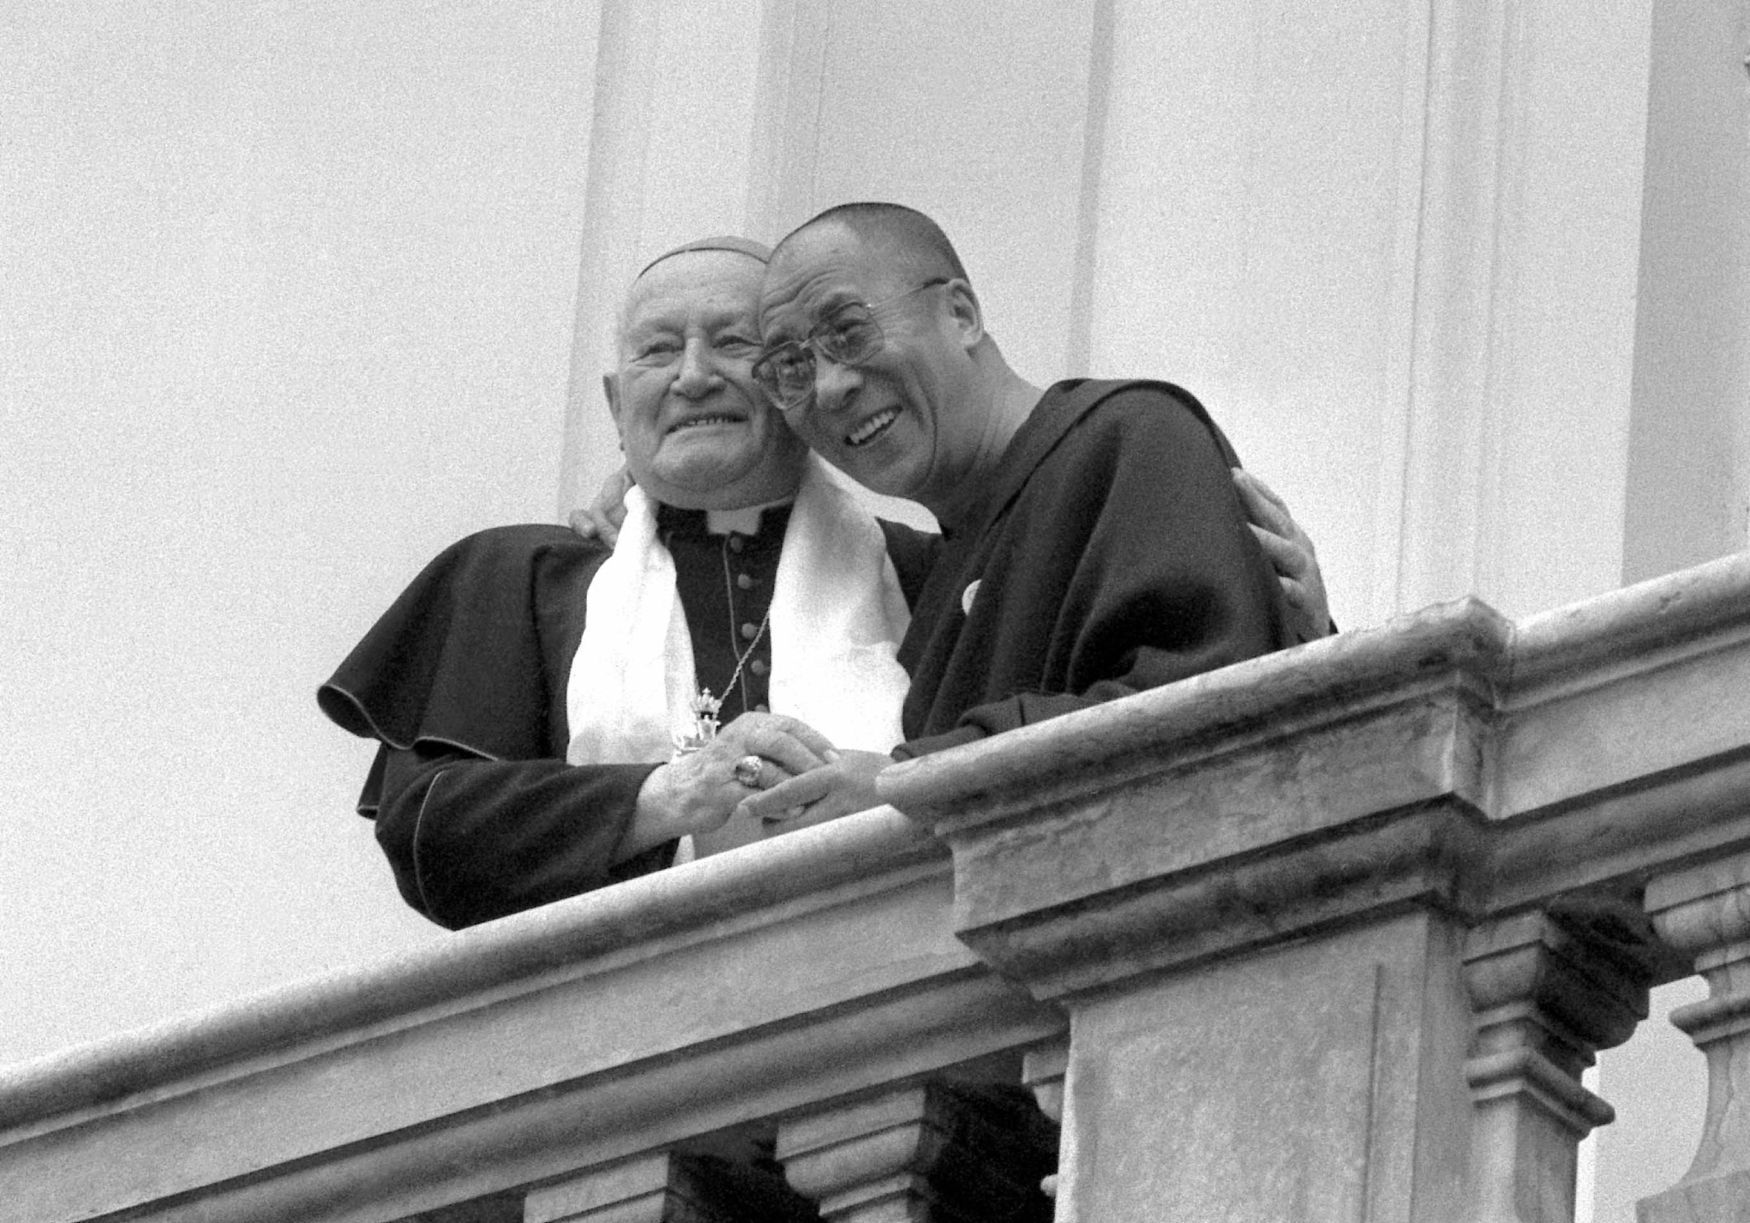 Kardinál František, dalajlama